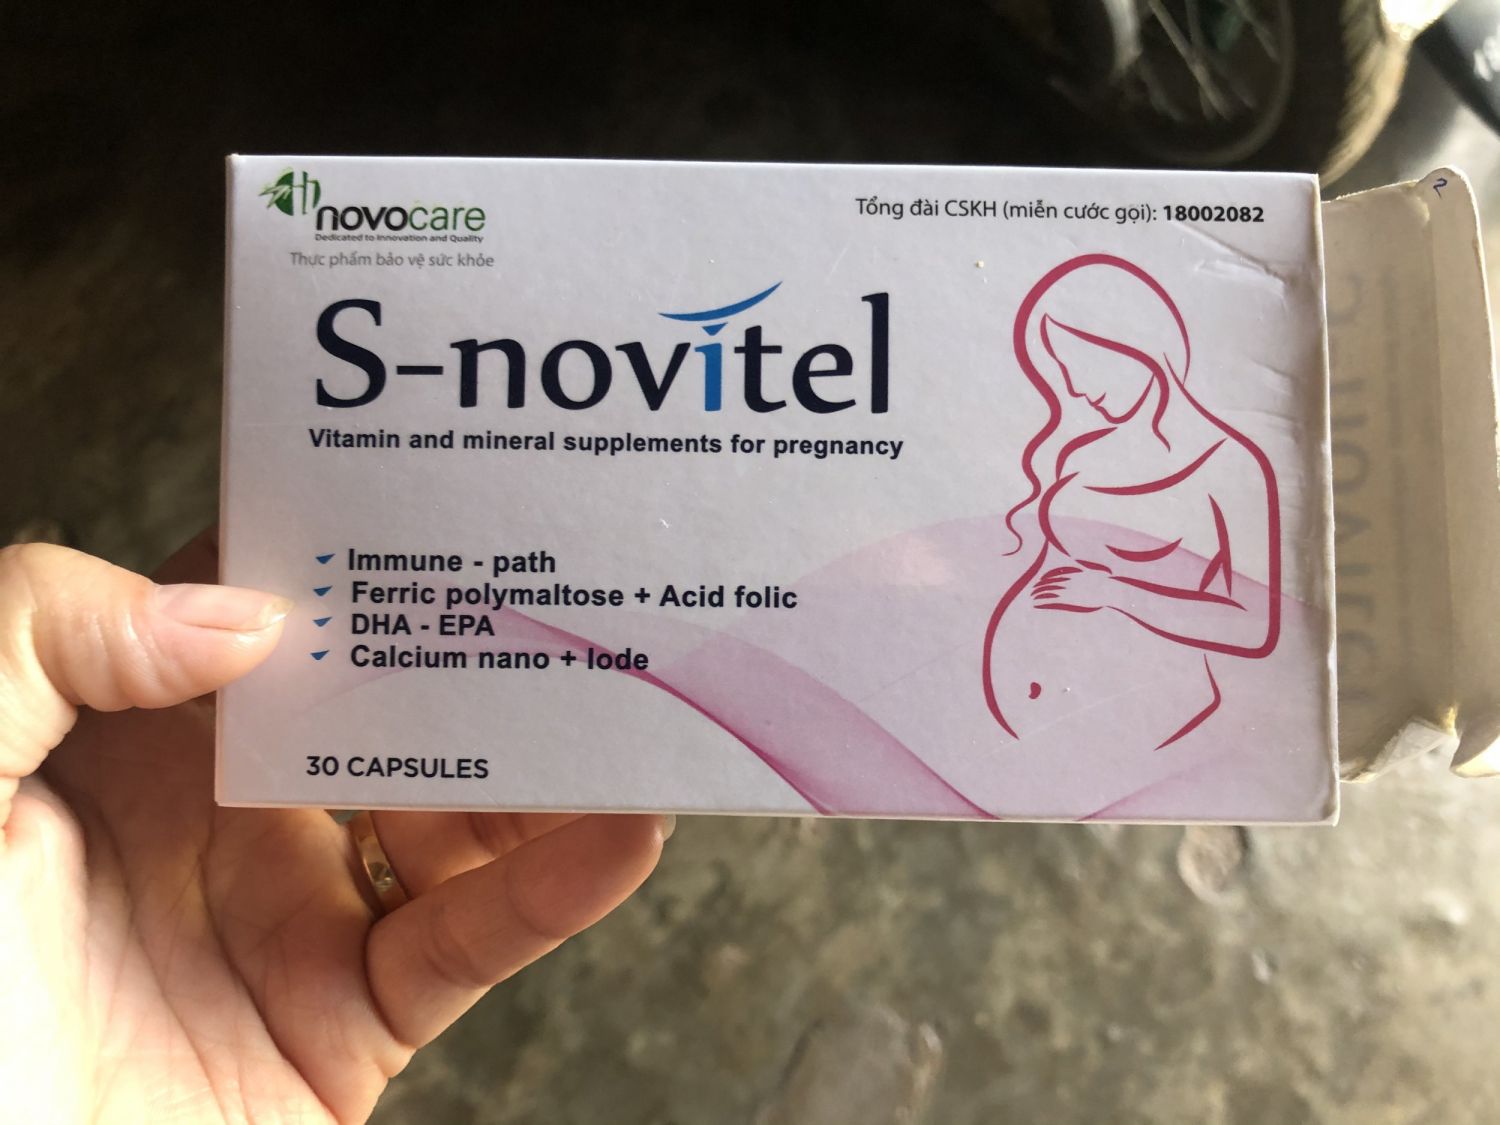 S novitel thuốc bổ tổng hợp cho phụ nữ mang thai: S novitel là loại thuốc bổ tổng hợp đặc biệt dành cho các mẹ bầu. Đây là sản phẩm được chiết xuất từ thiên nhiên, giúp cung cấp đầy đủ dinh dưỡng và vi chất cần thiết cho sự phát triển của thai nhi. Hãy xem hình ảnh liên quan để hiểu thêm về sản phẩm này.